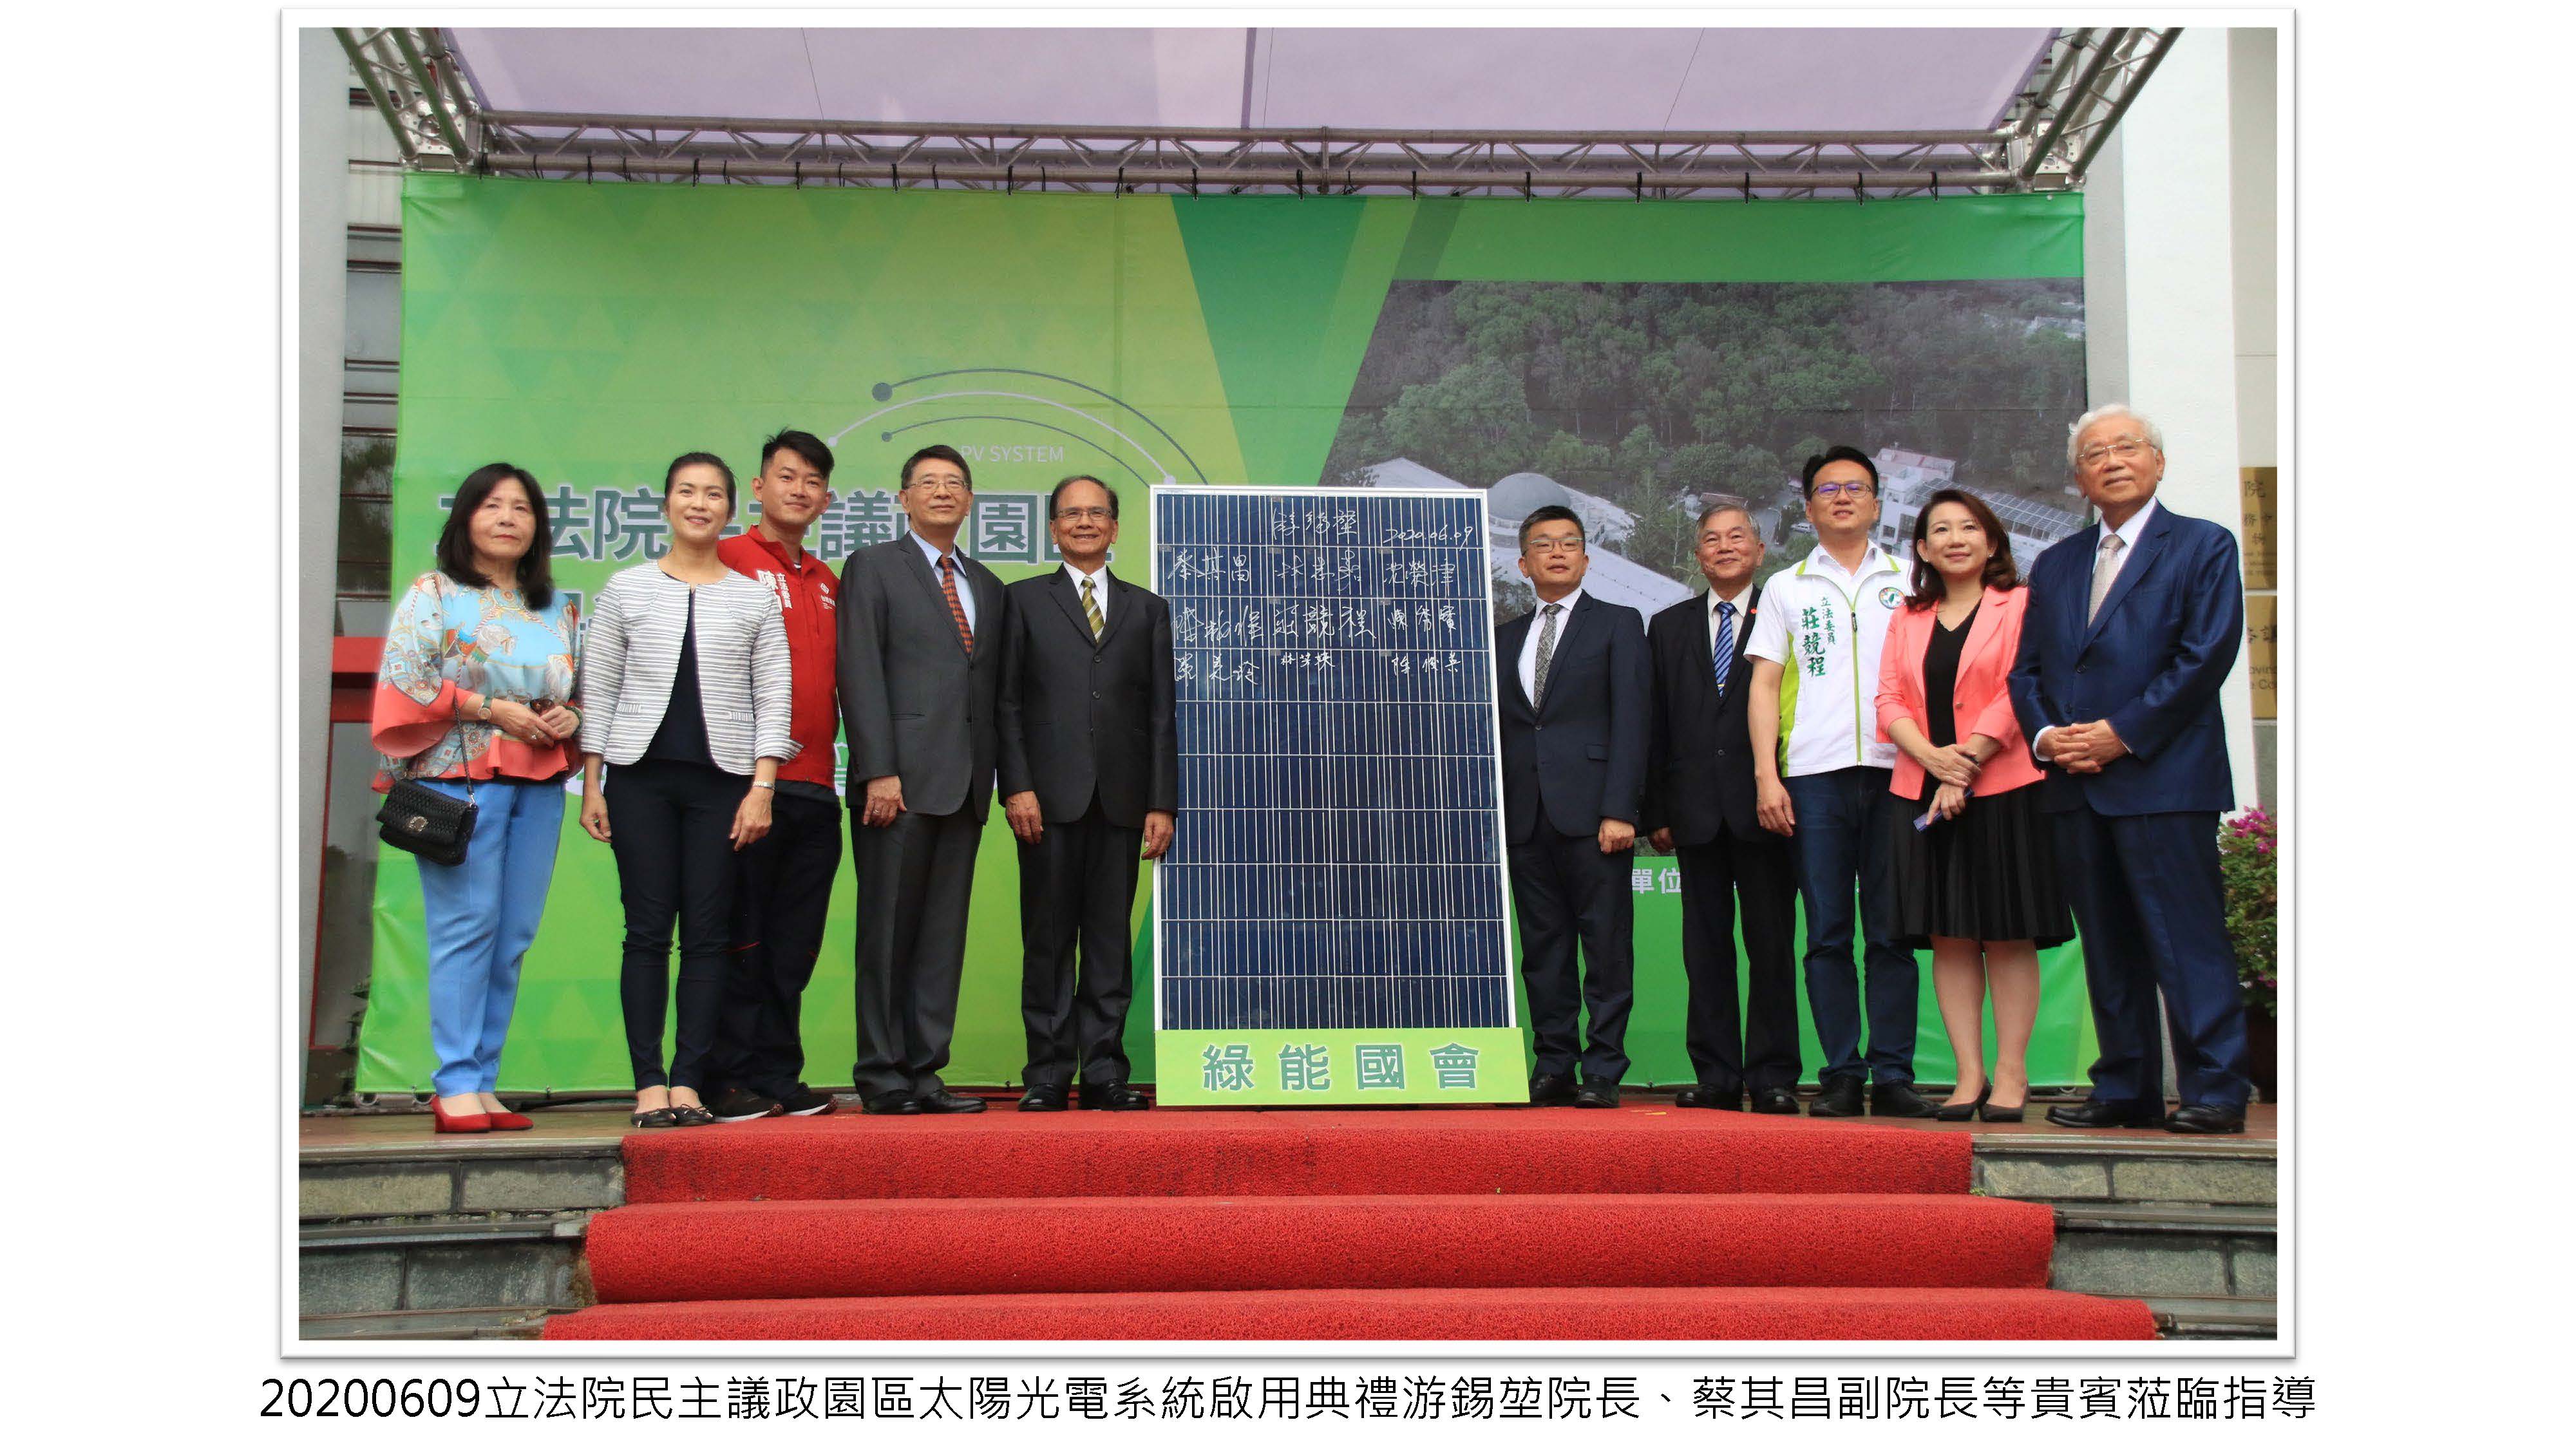 民主議政園區太陽光電系統啟用典禮封面照